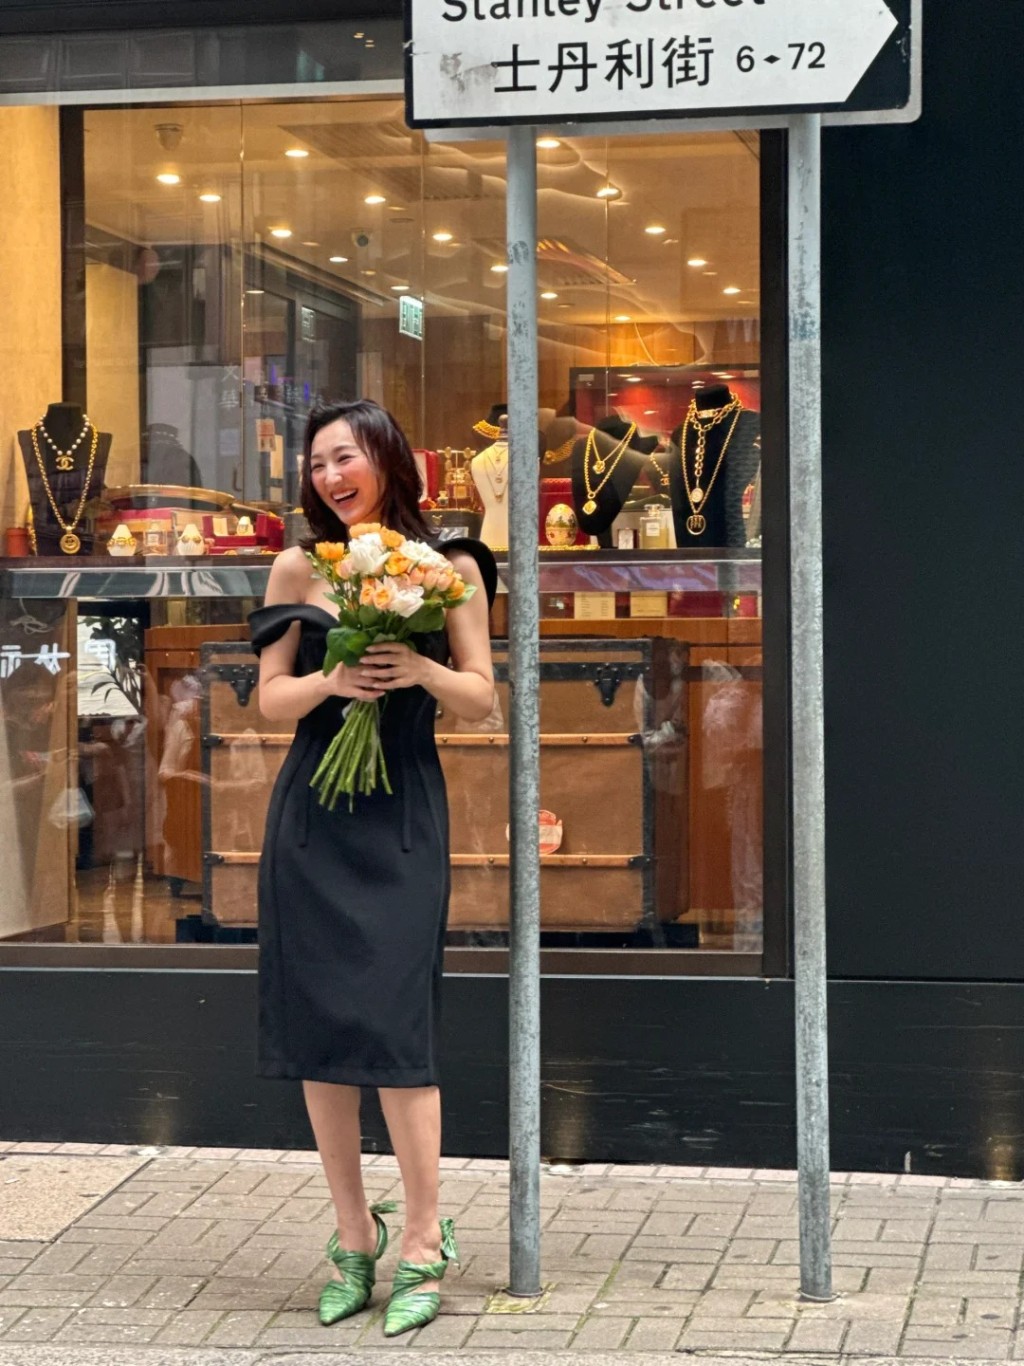 照片见高海宁身穿黑色连身裙，手拿着一束鲜花，笑得非常灿烂。